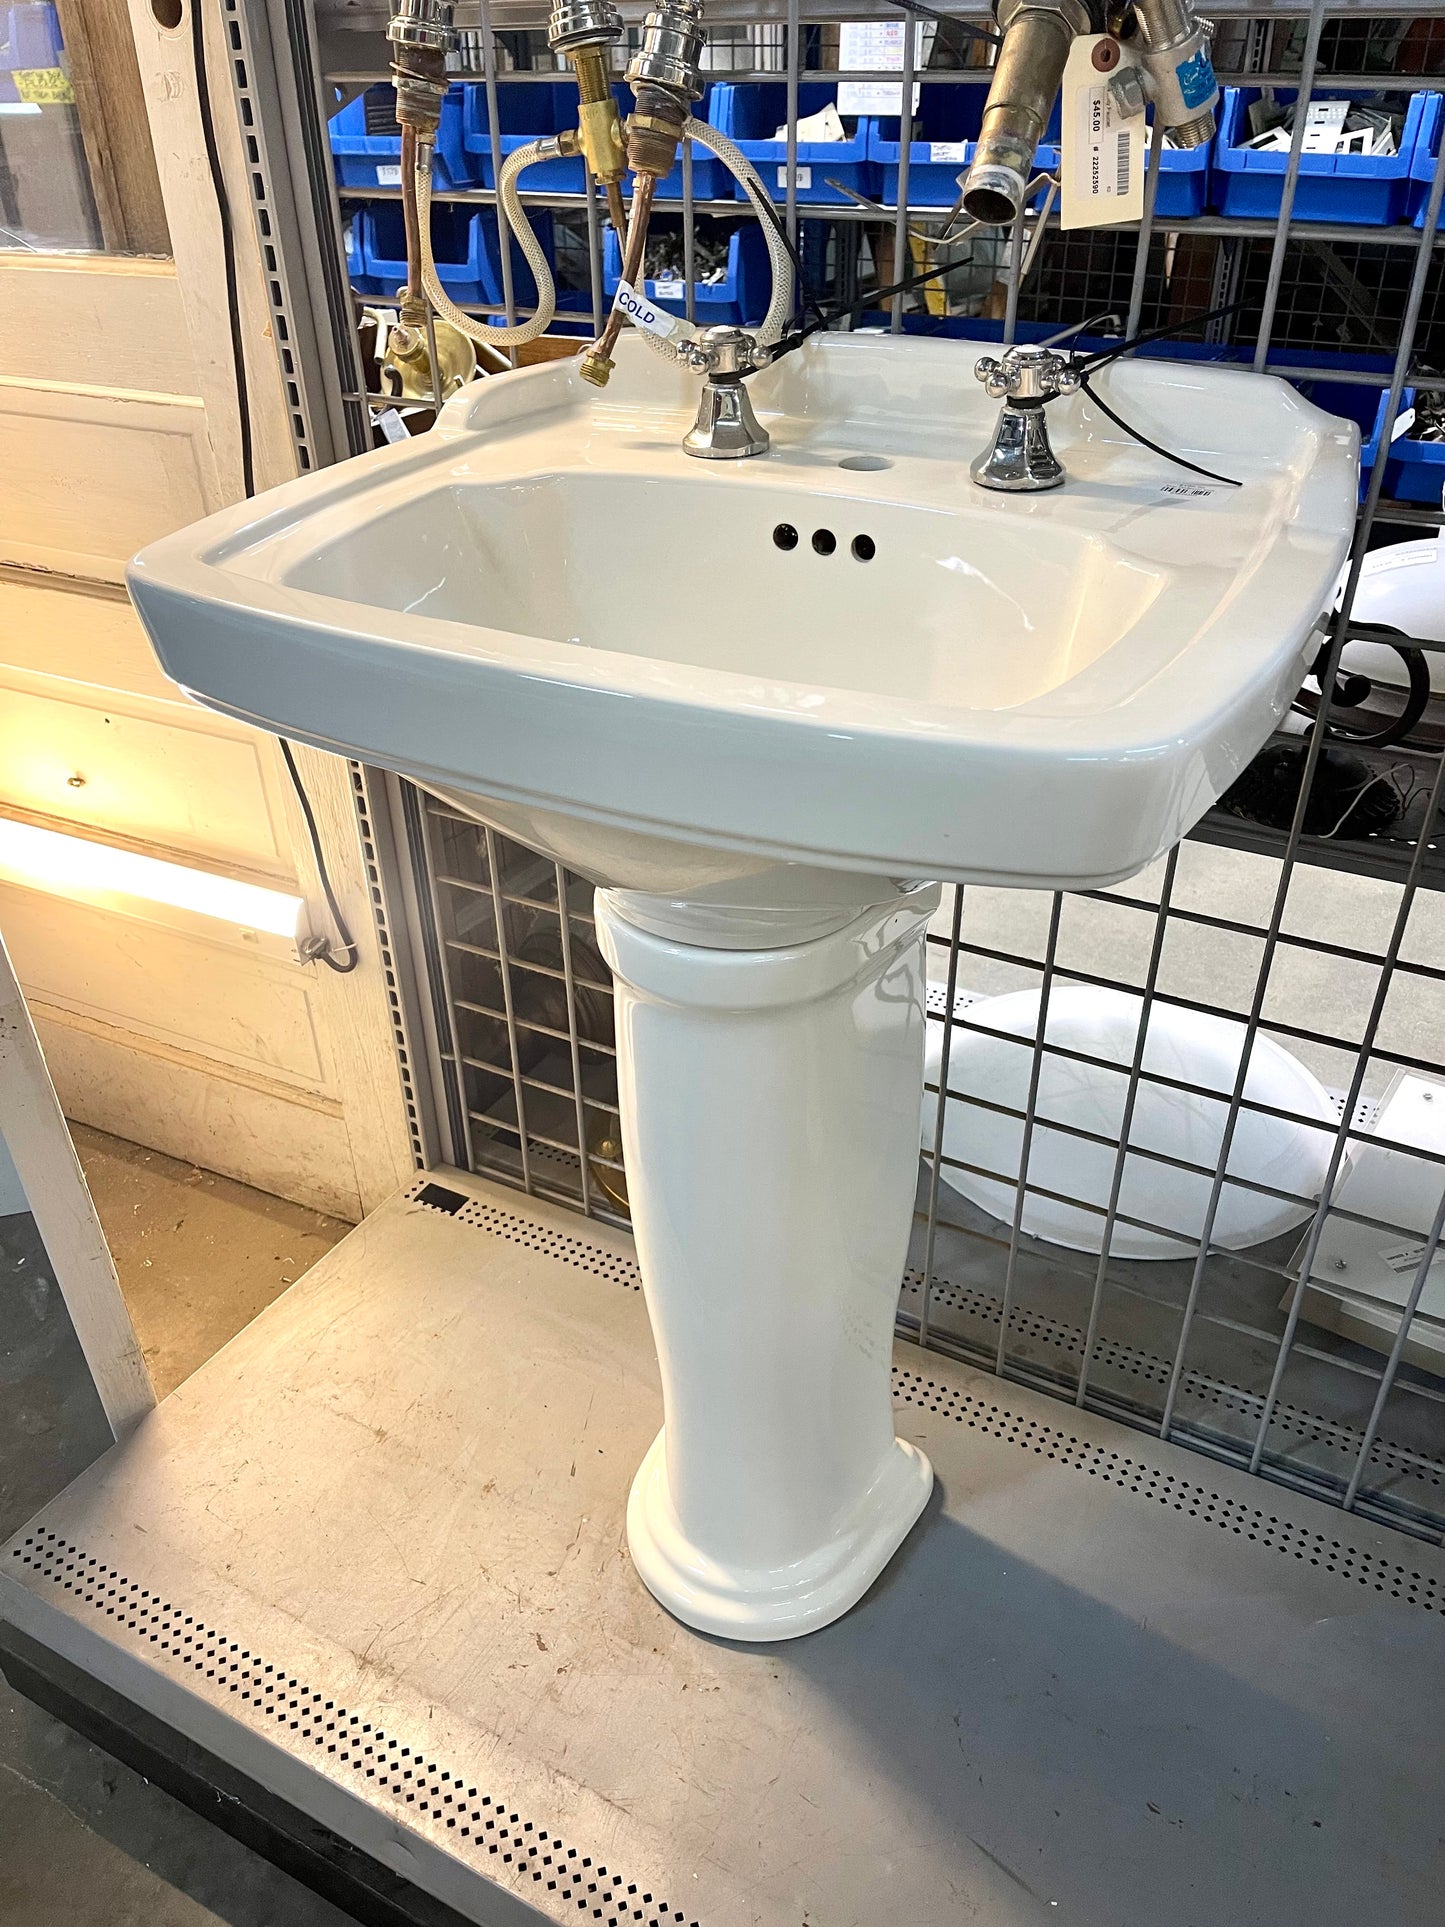 Toto Pedestal Sink